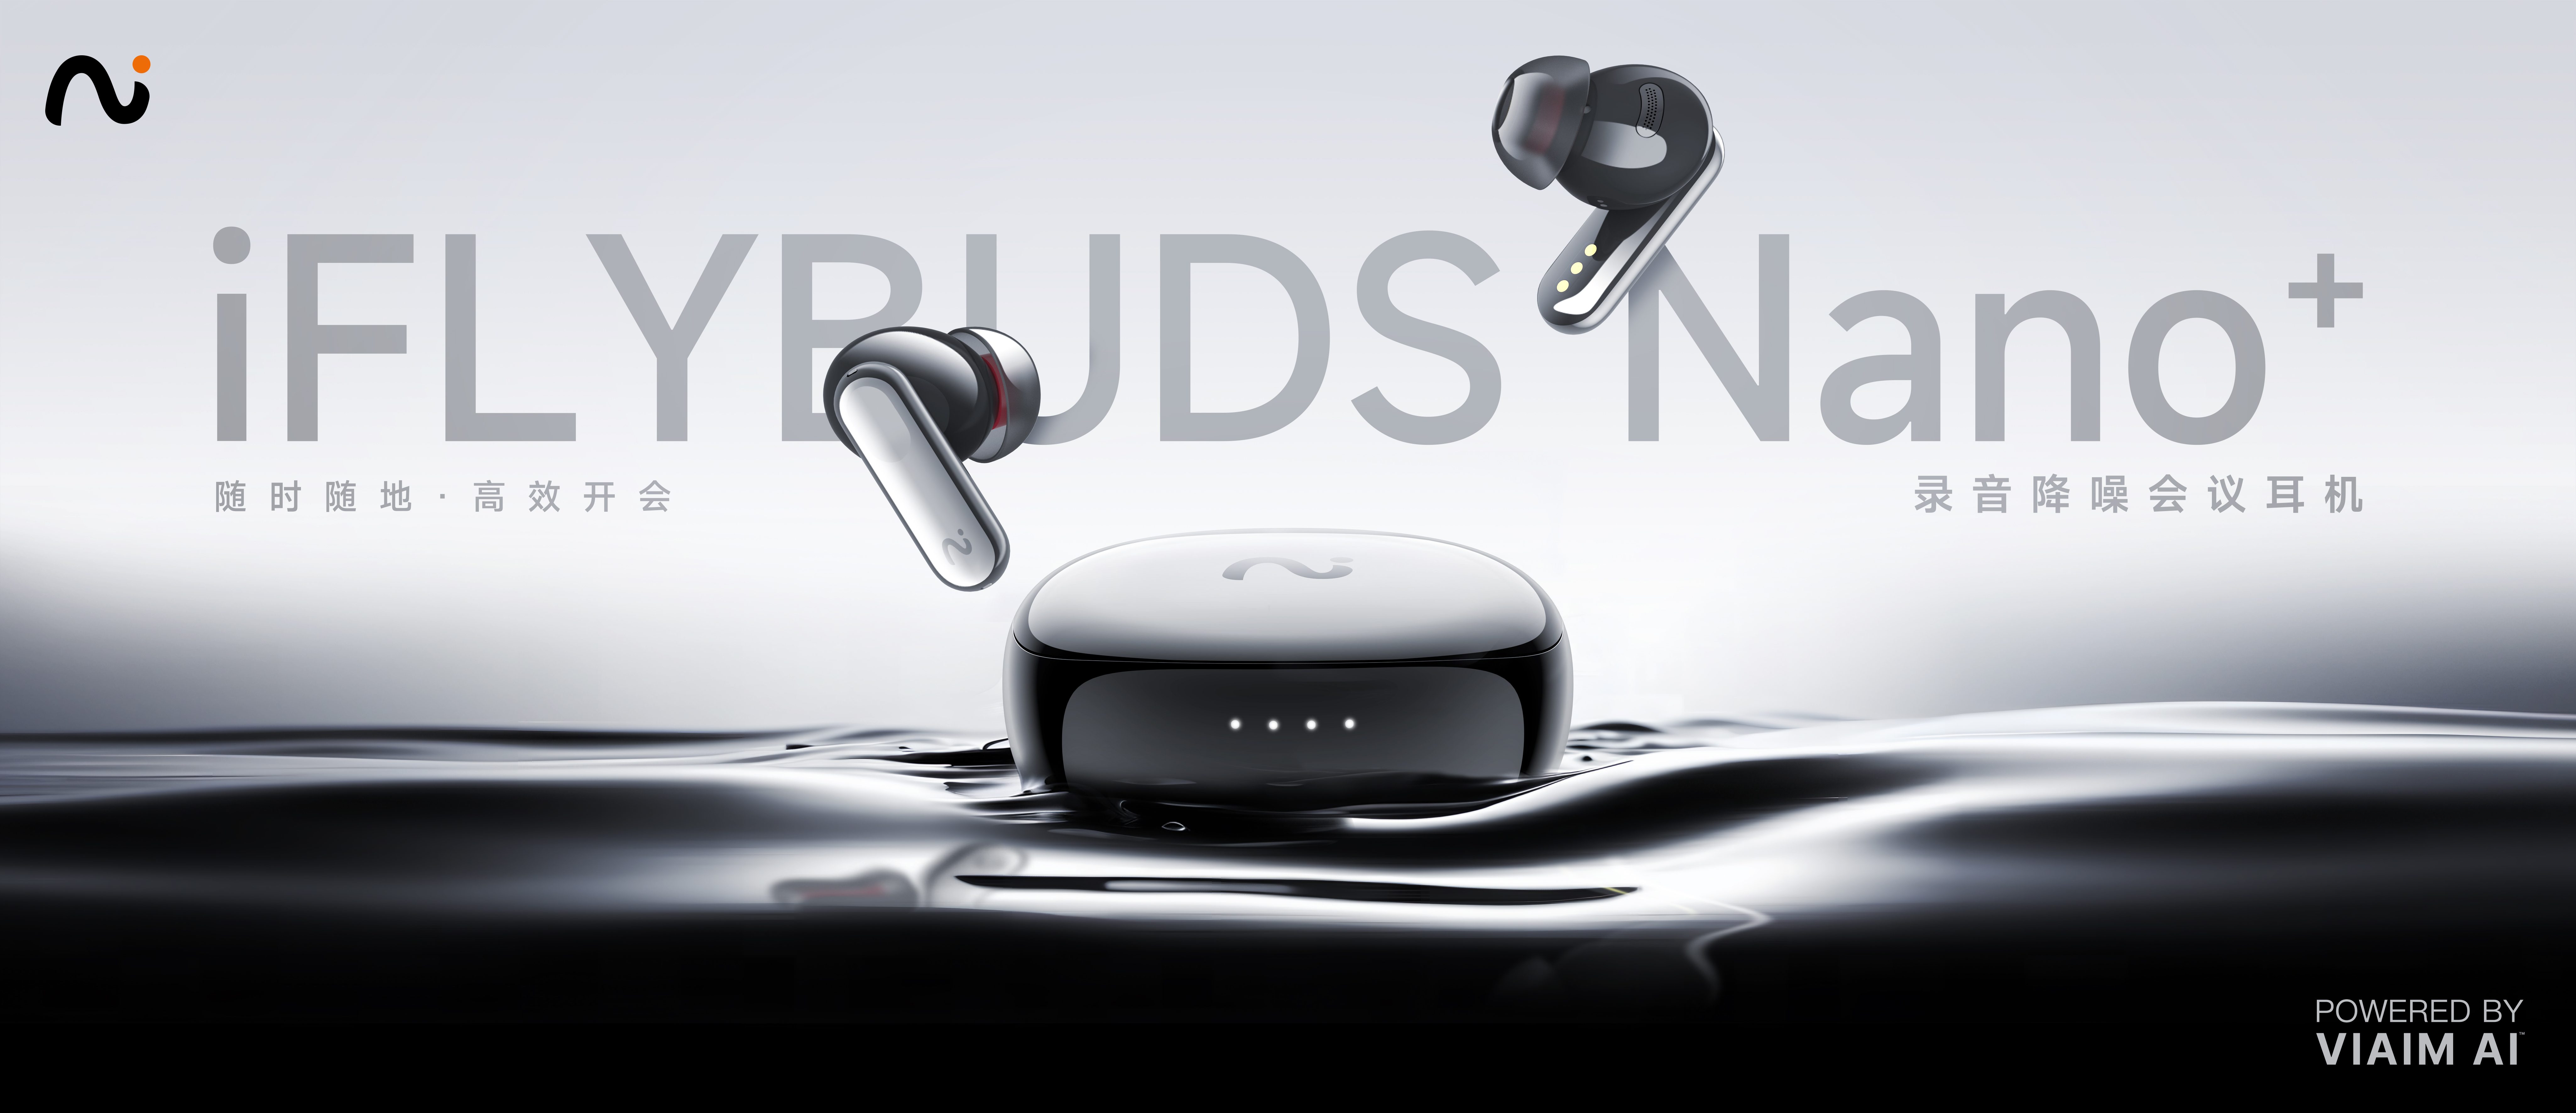 未来智能发布全新录音降噪会议耳机iFLYBUDS Nano系列，VIAIM AI生成式会议助理值得期待第1张